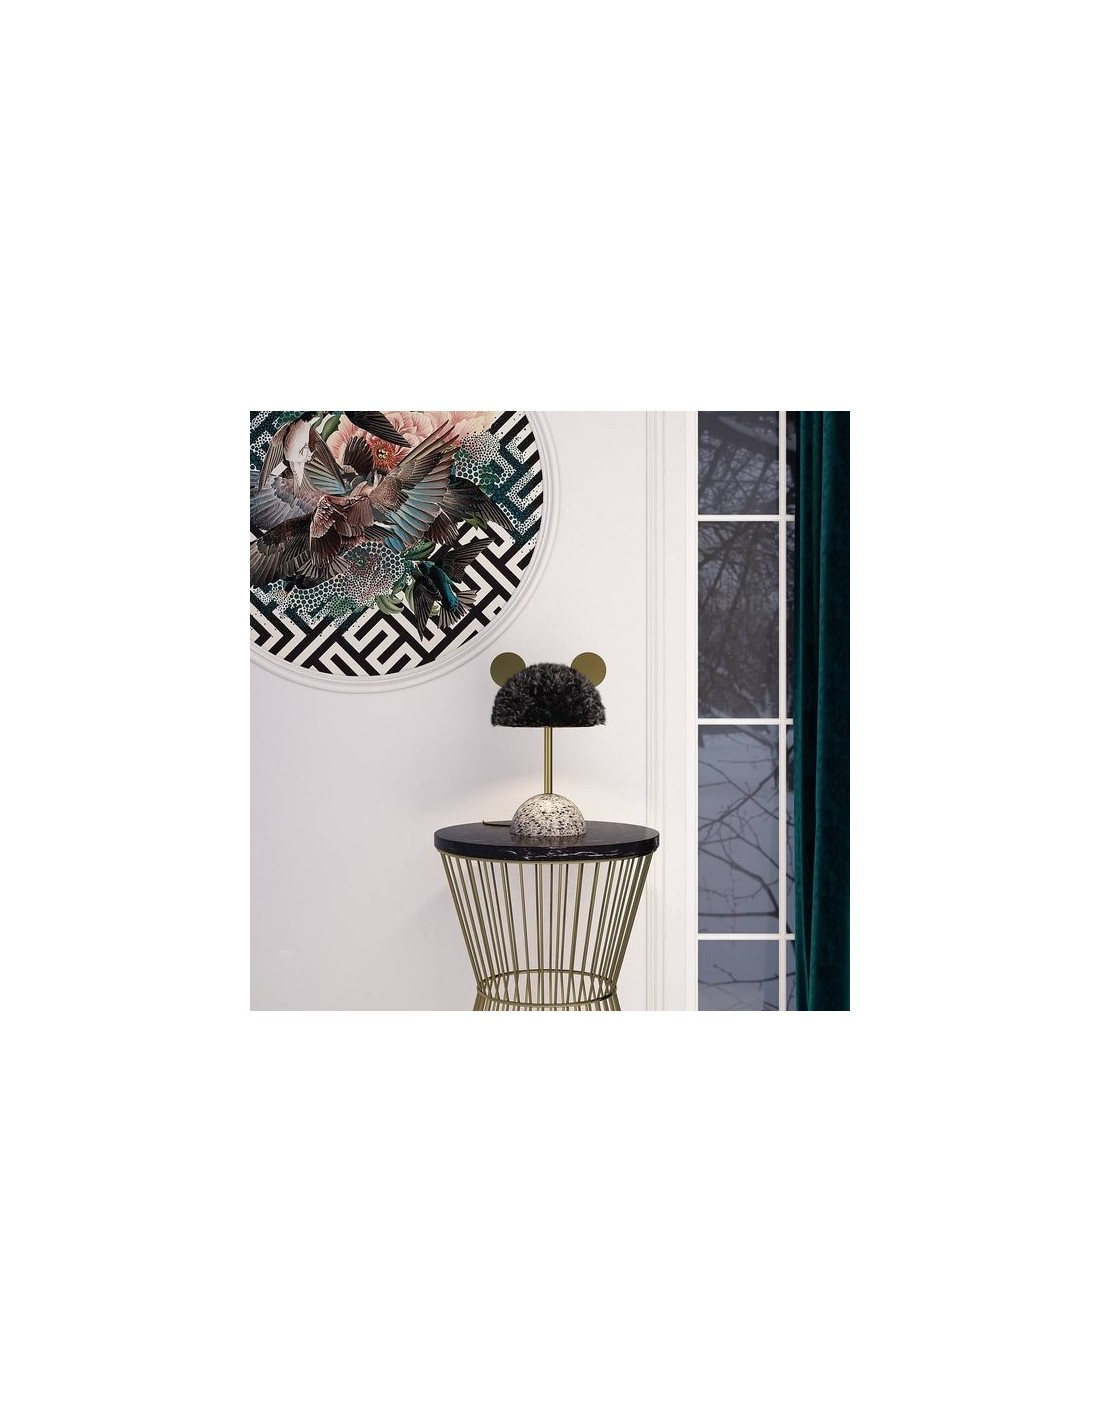 Minos Table lamp |Home Decor|KiKi Lighting